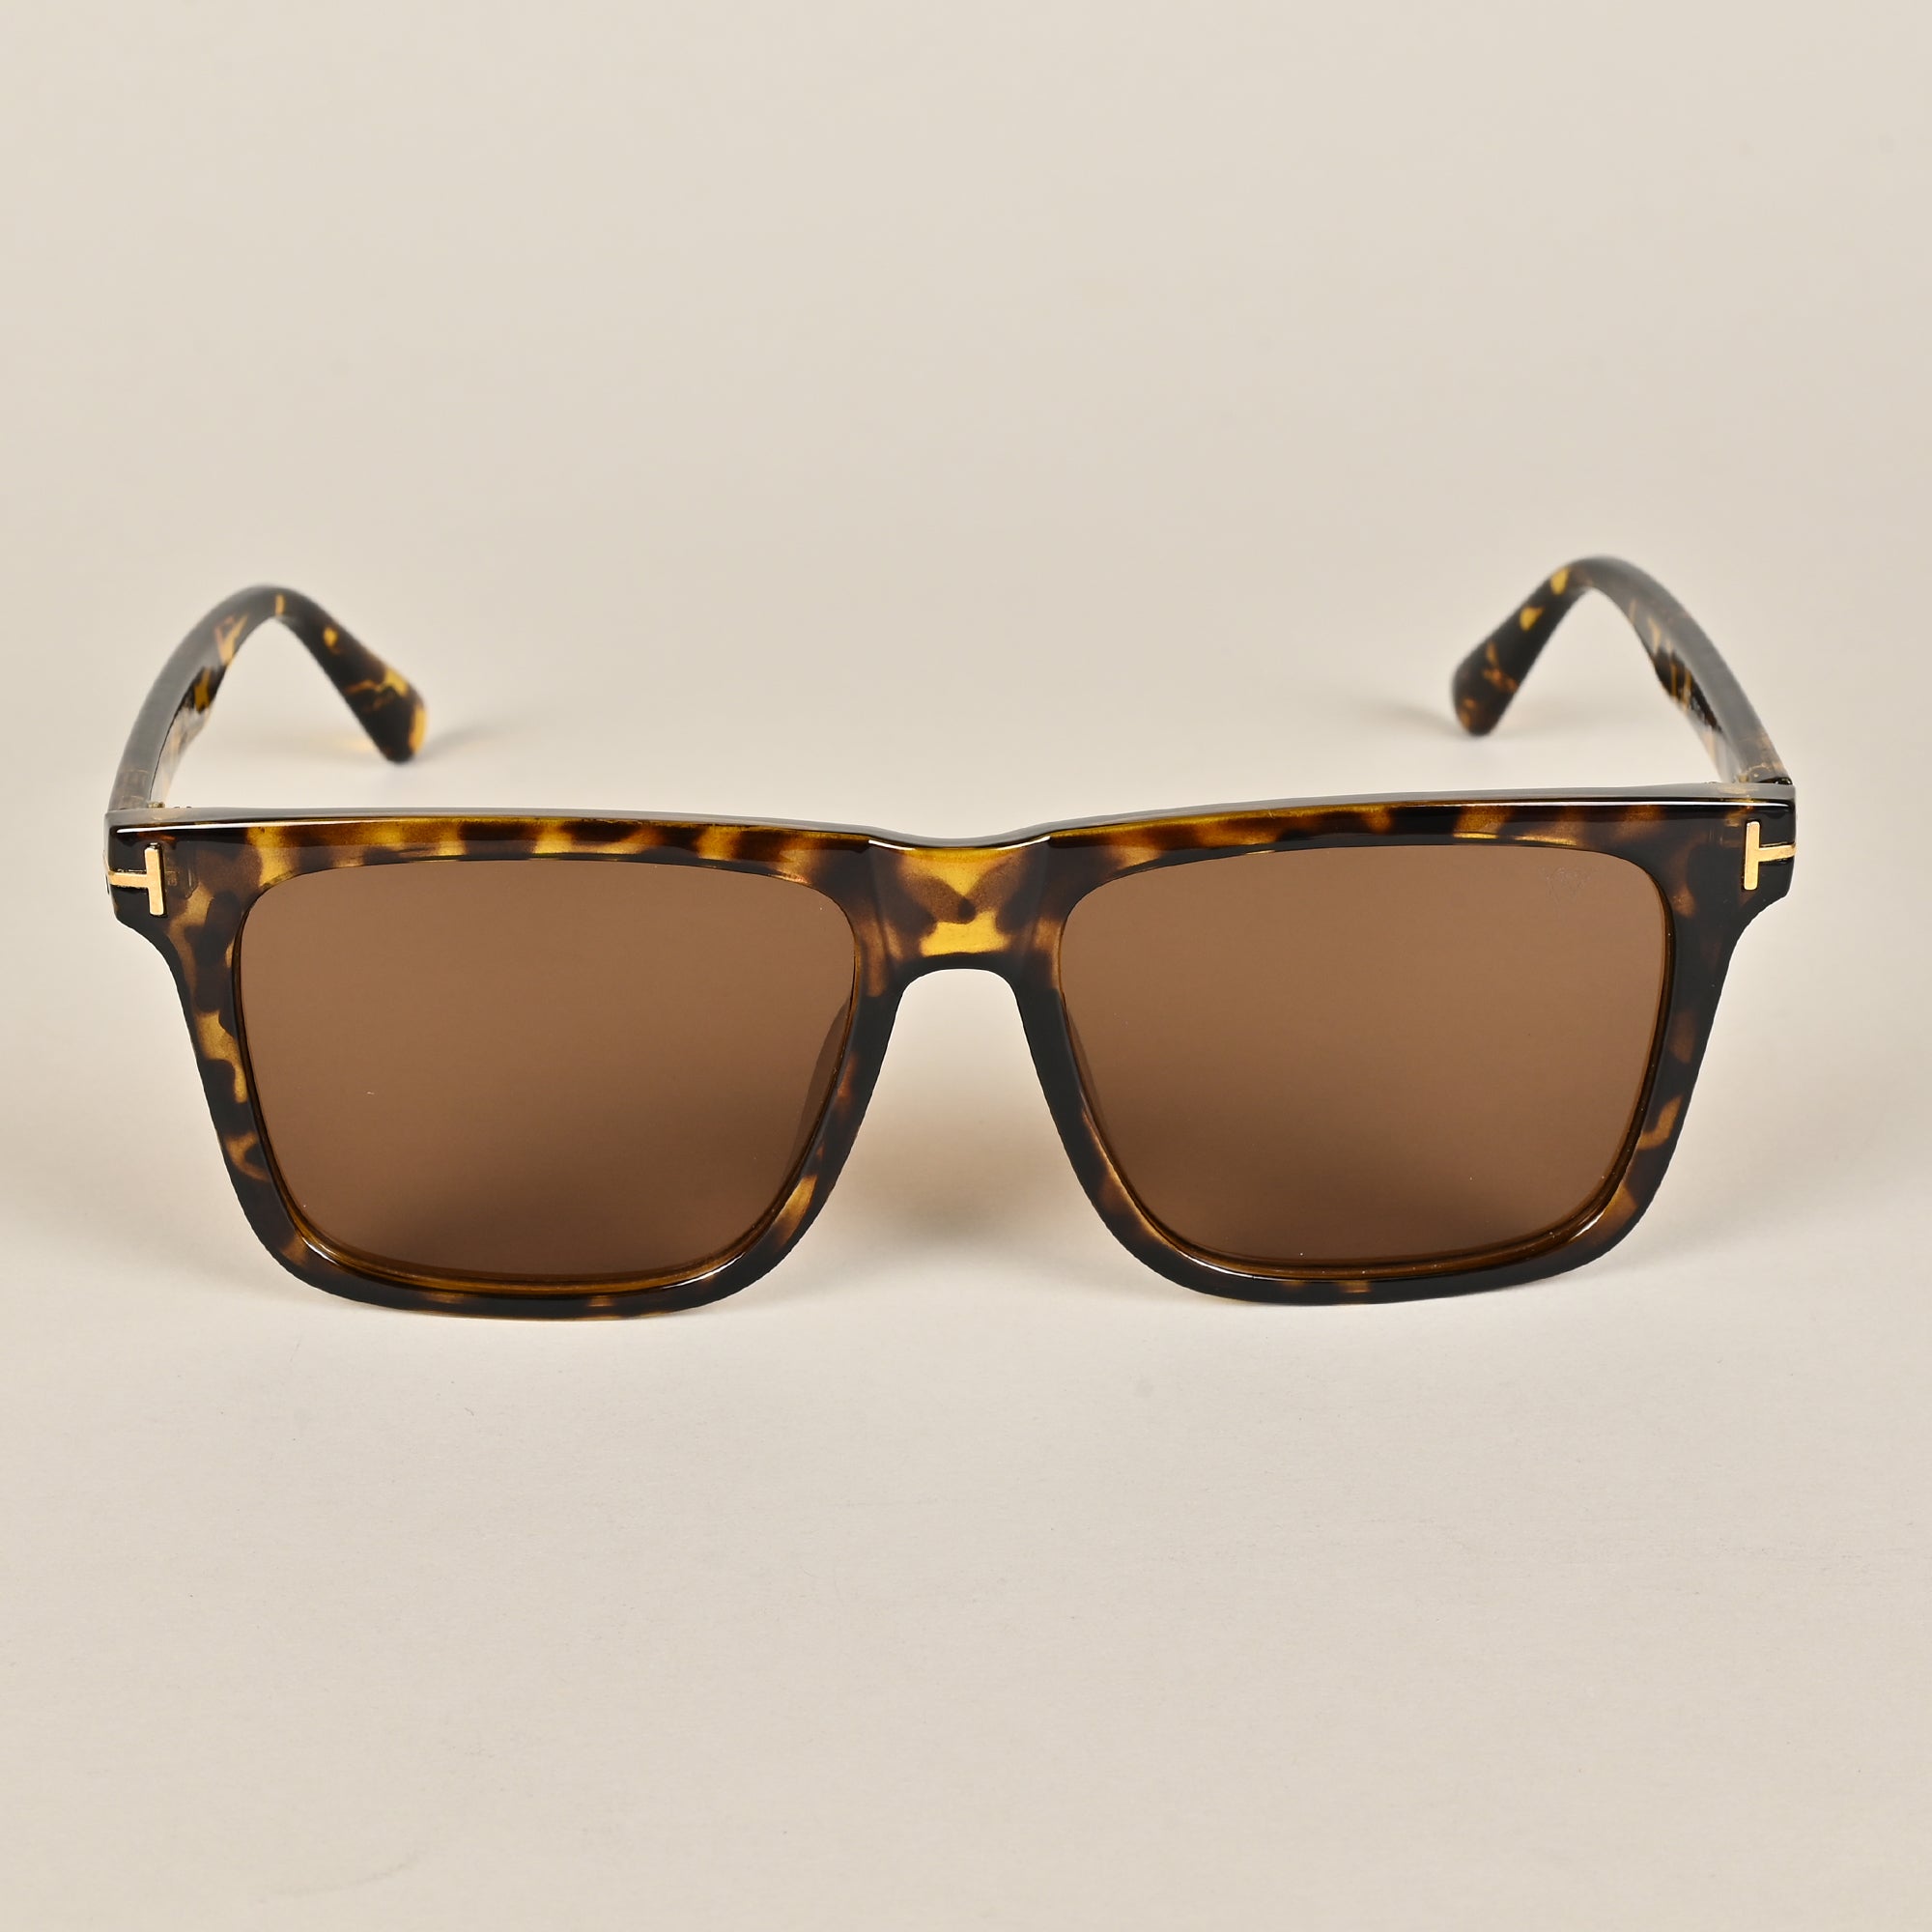 Voyage Brown Wayfarer Sunglasses for Men & Women (A12MG3955)